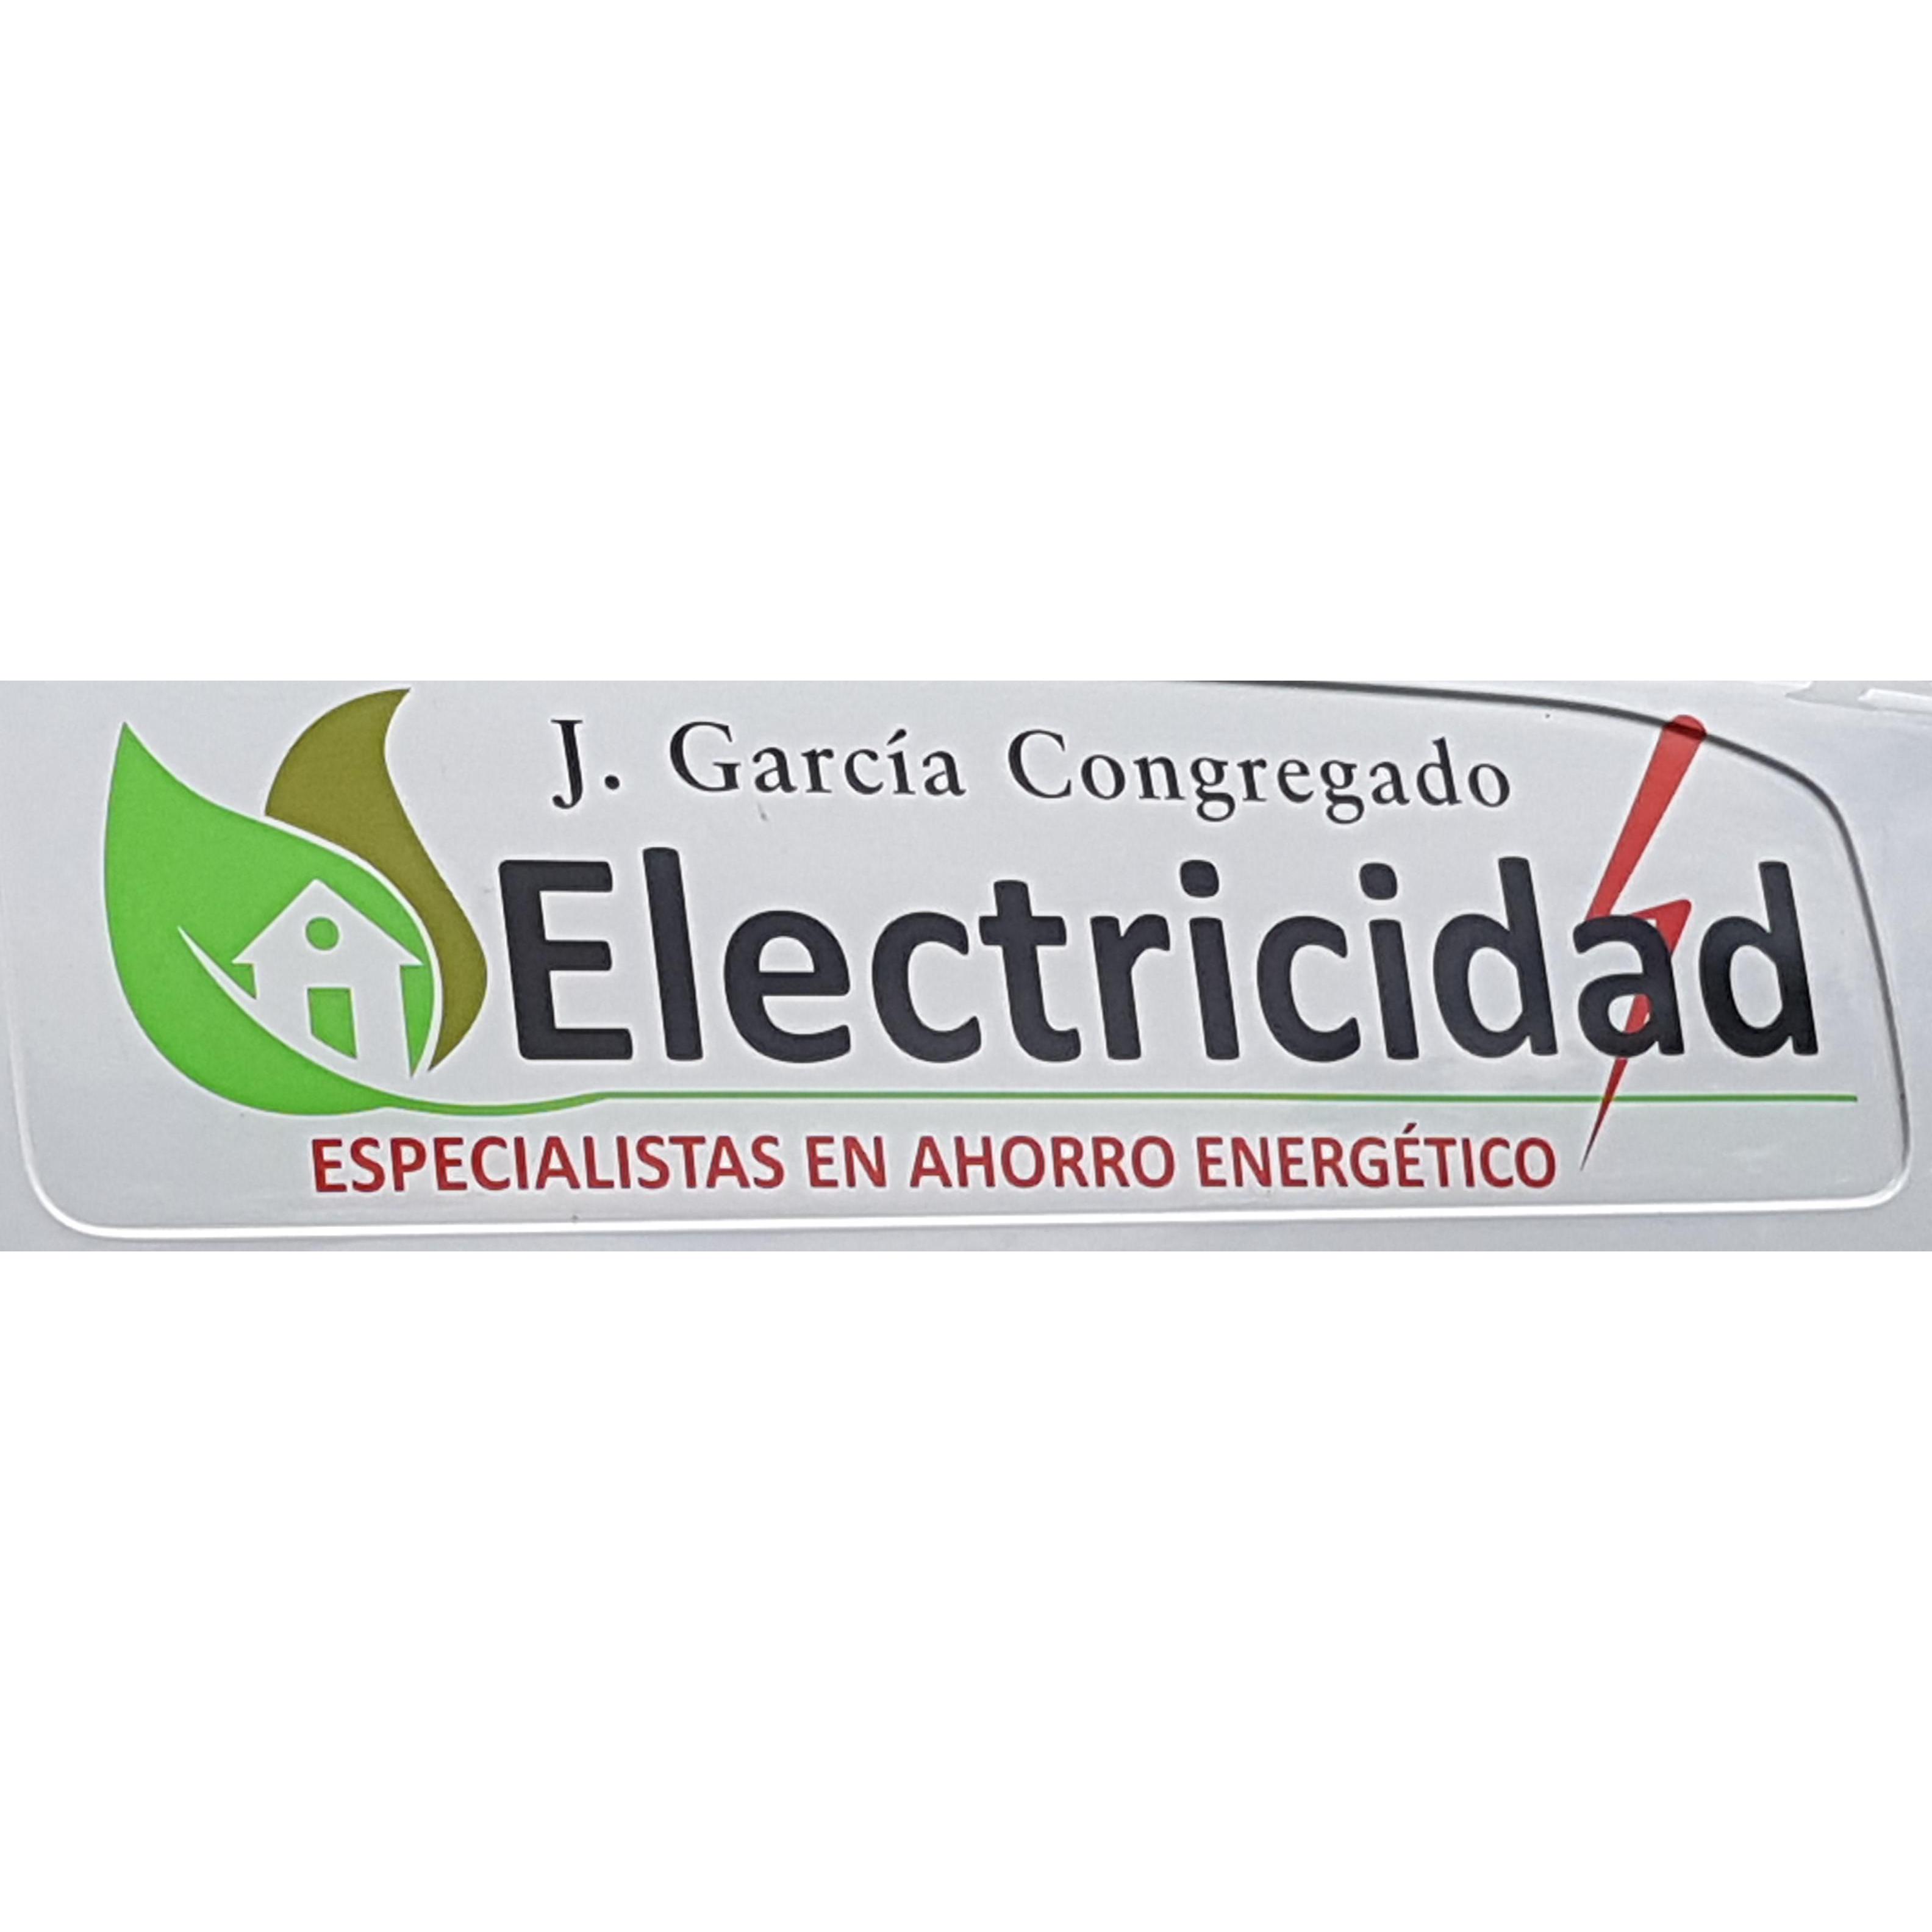 Foto de Electricidad Garcia Congregado Cáceres